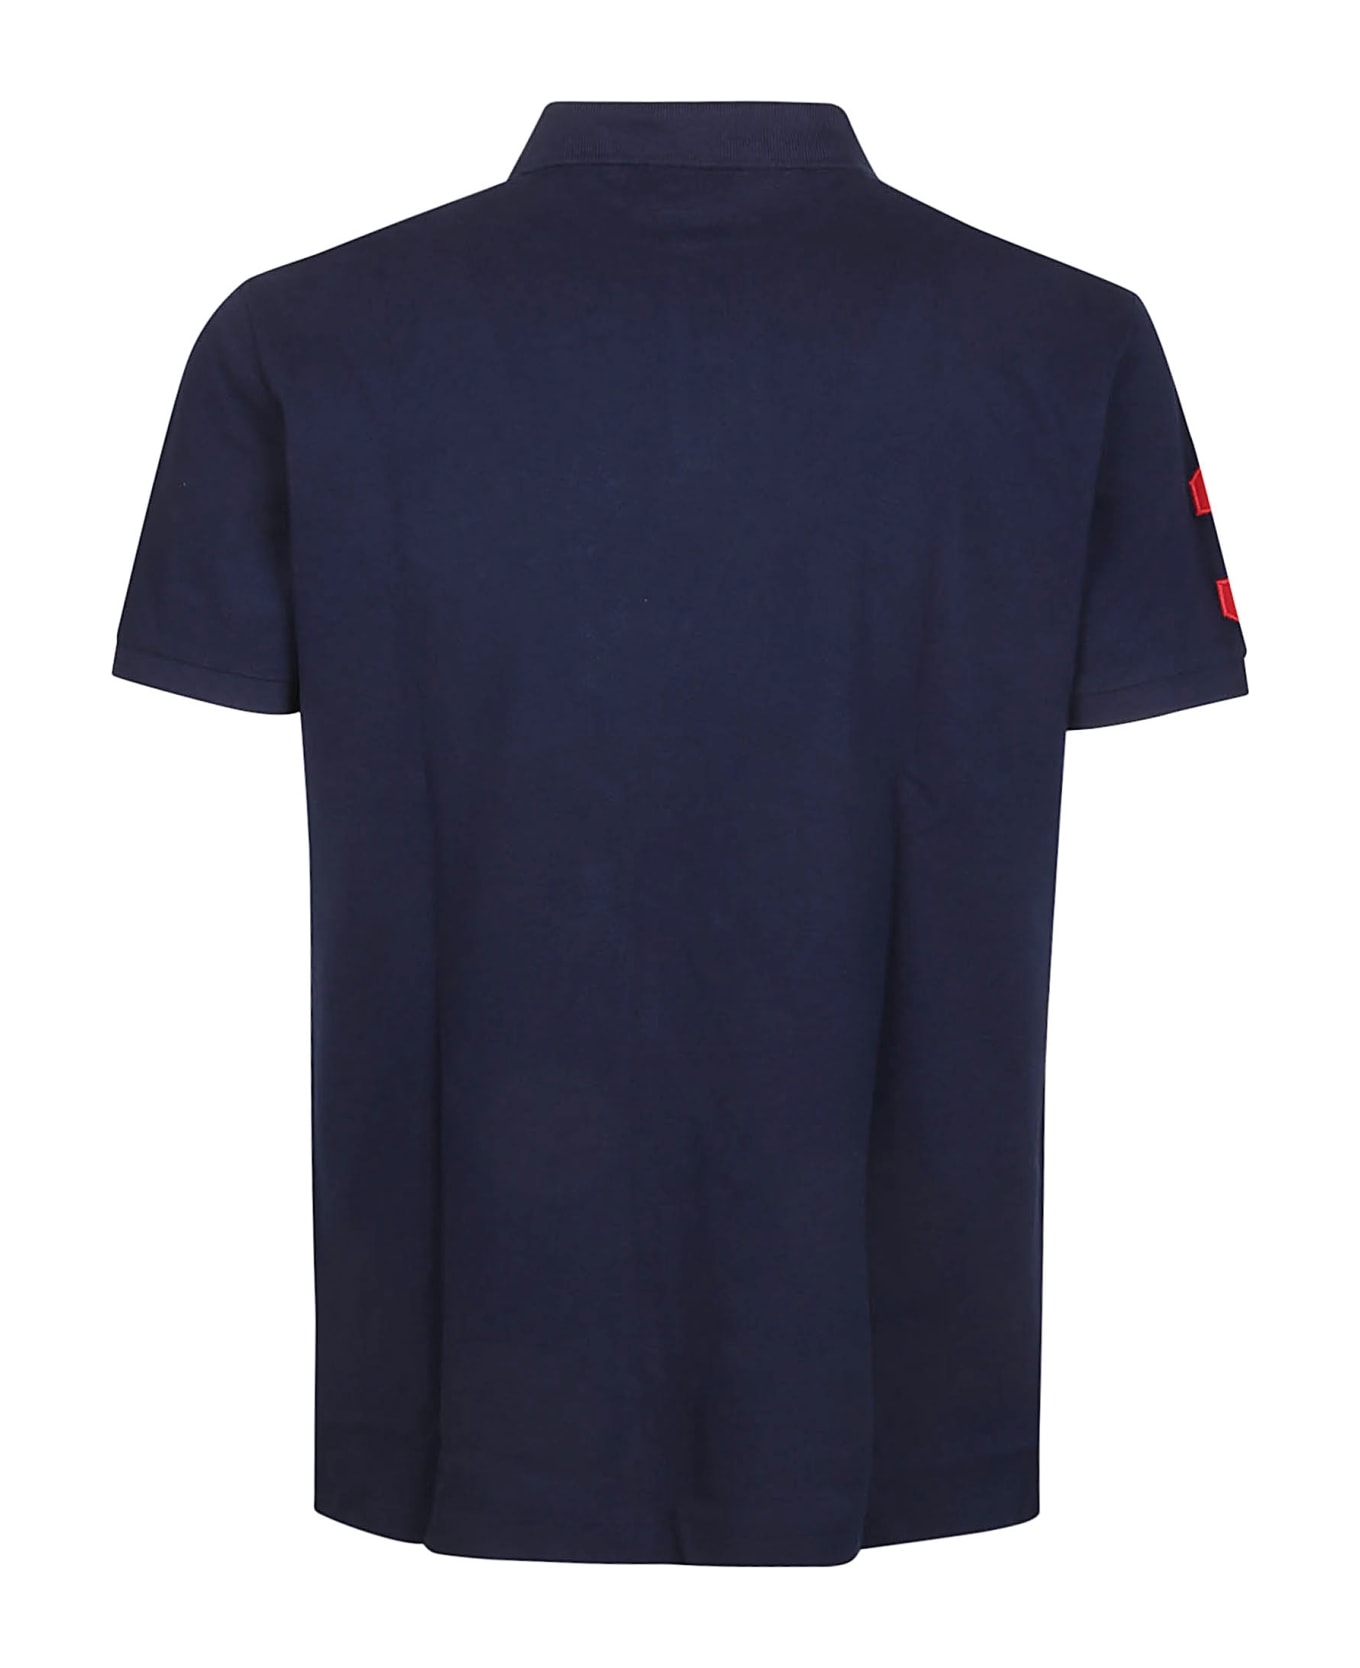 Polo Ralph Lauren Short Sleeve Polo Shirt - Newport Navy